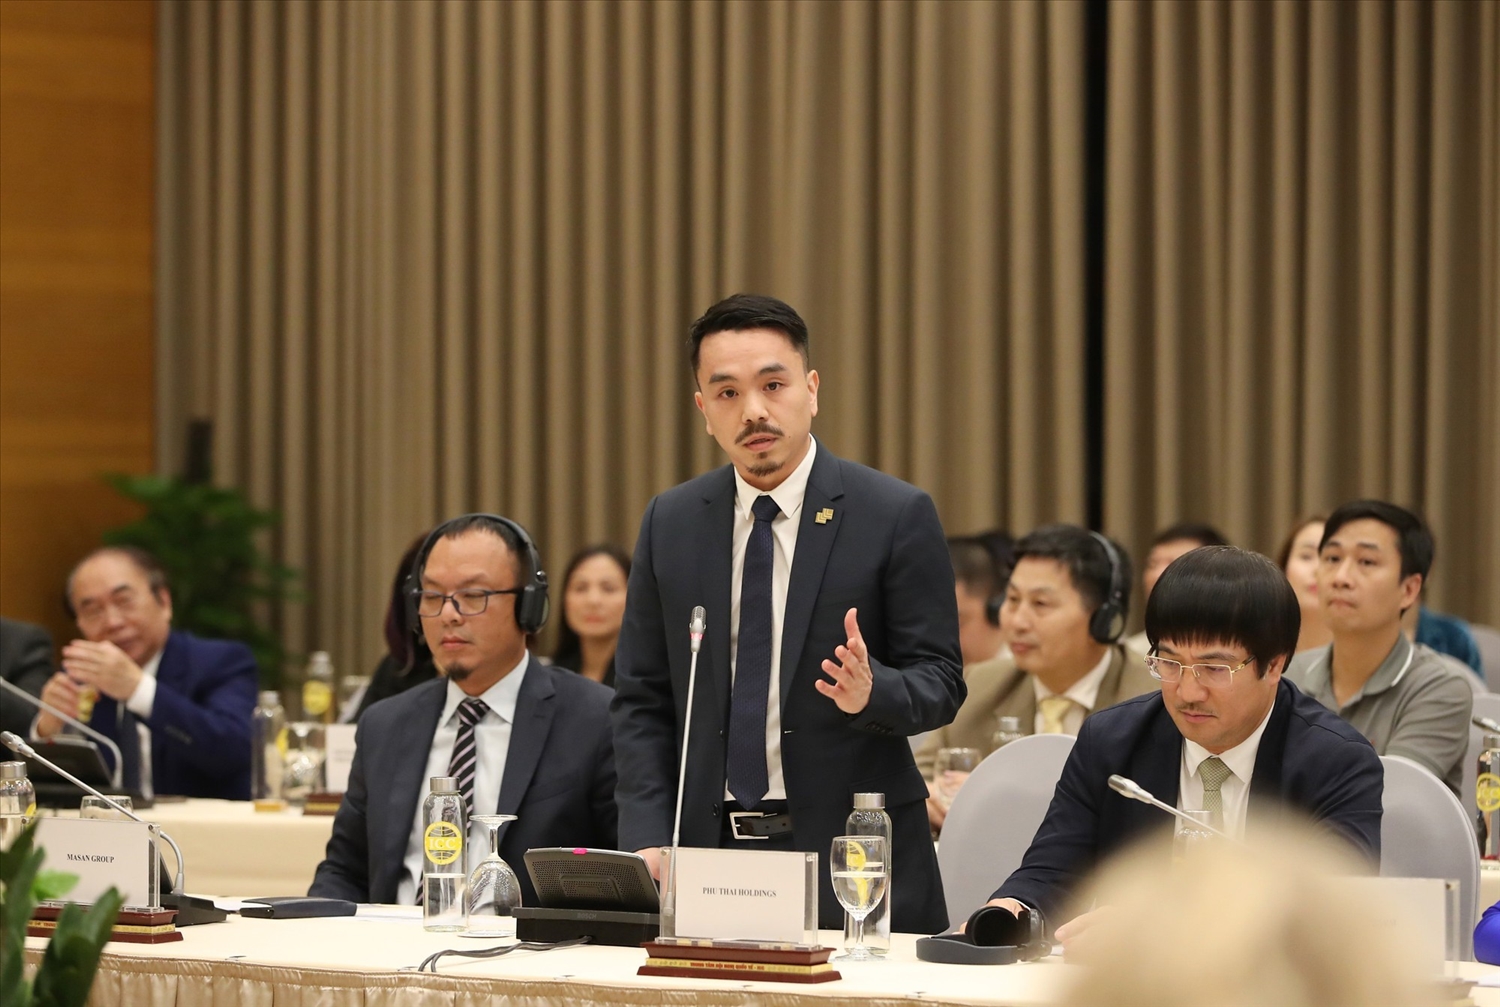 Đại diện doanh nghiệp chia sẻ tại Hội nghị - Ảnh: VGP/Nhật Bắc